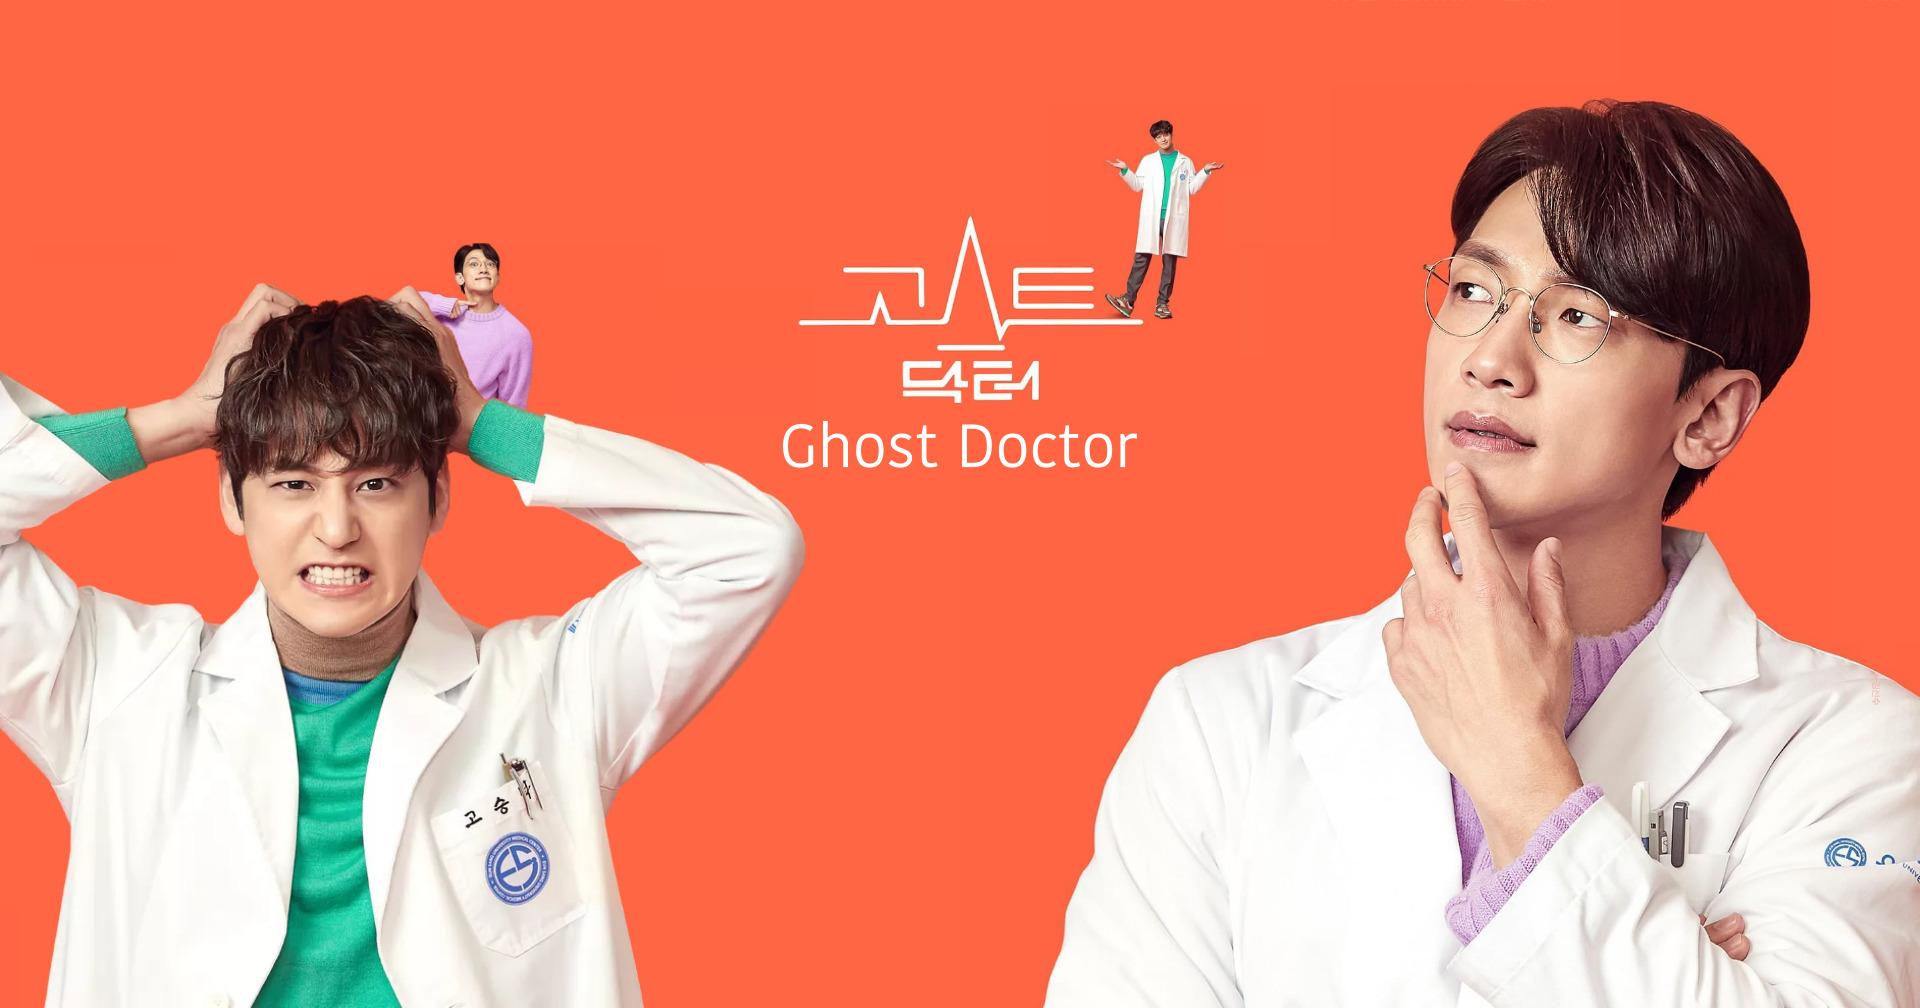 รีวิว] Ghost Doctor : เมื่อสองหมอรวมร่าง ก็สาดกำไรให้คนดูเต็ม ๆ - #beartai